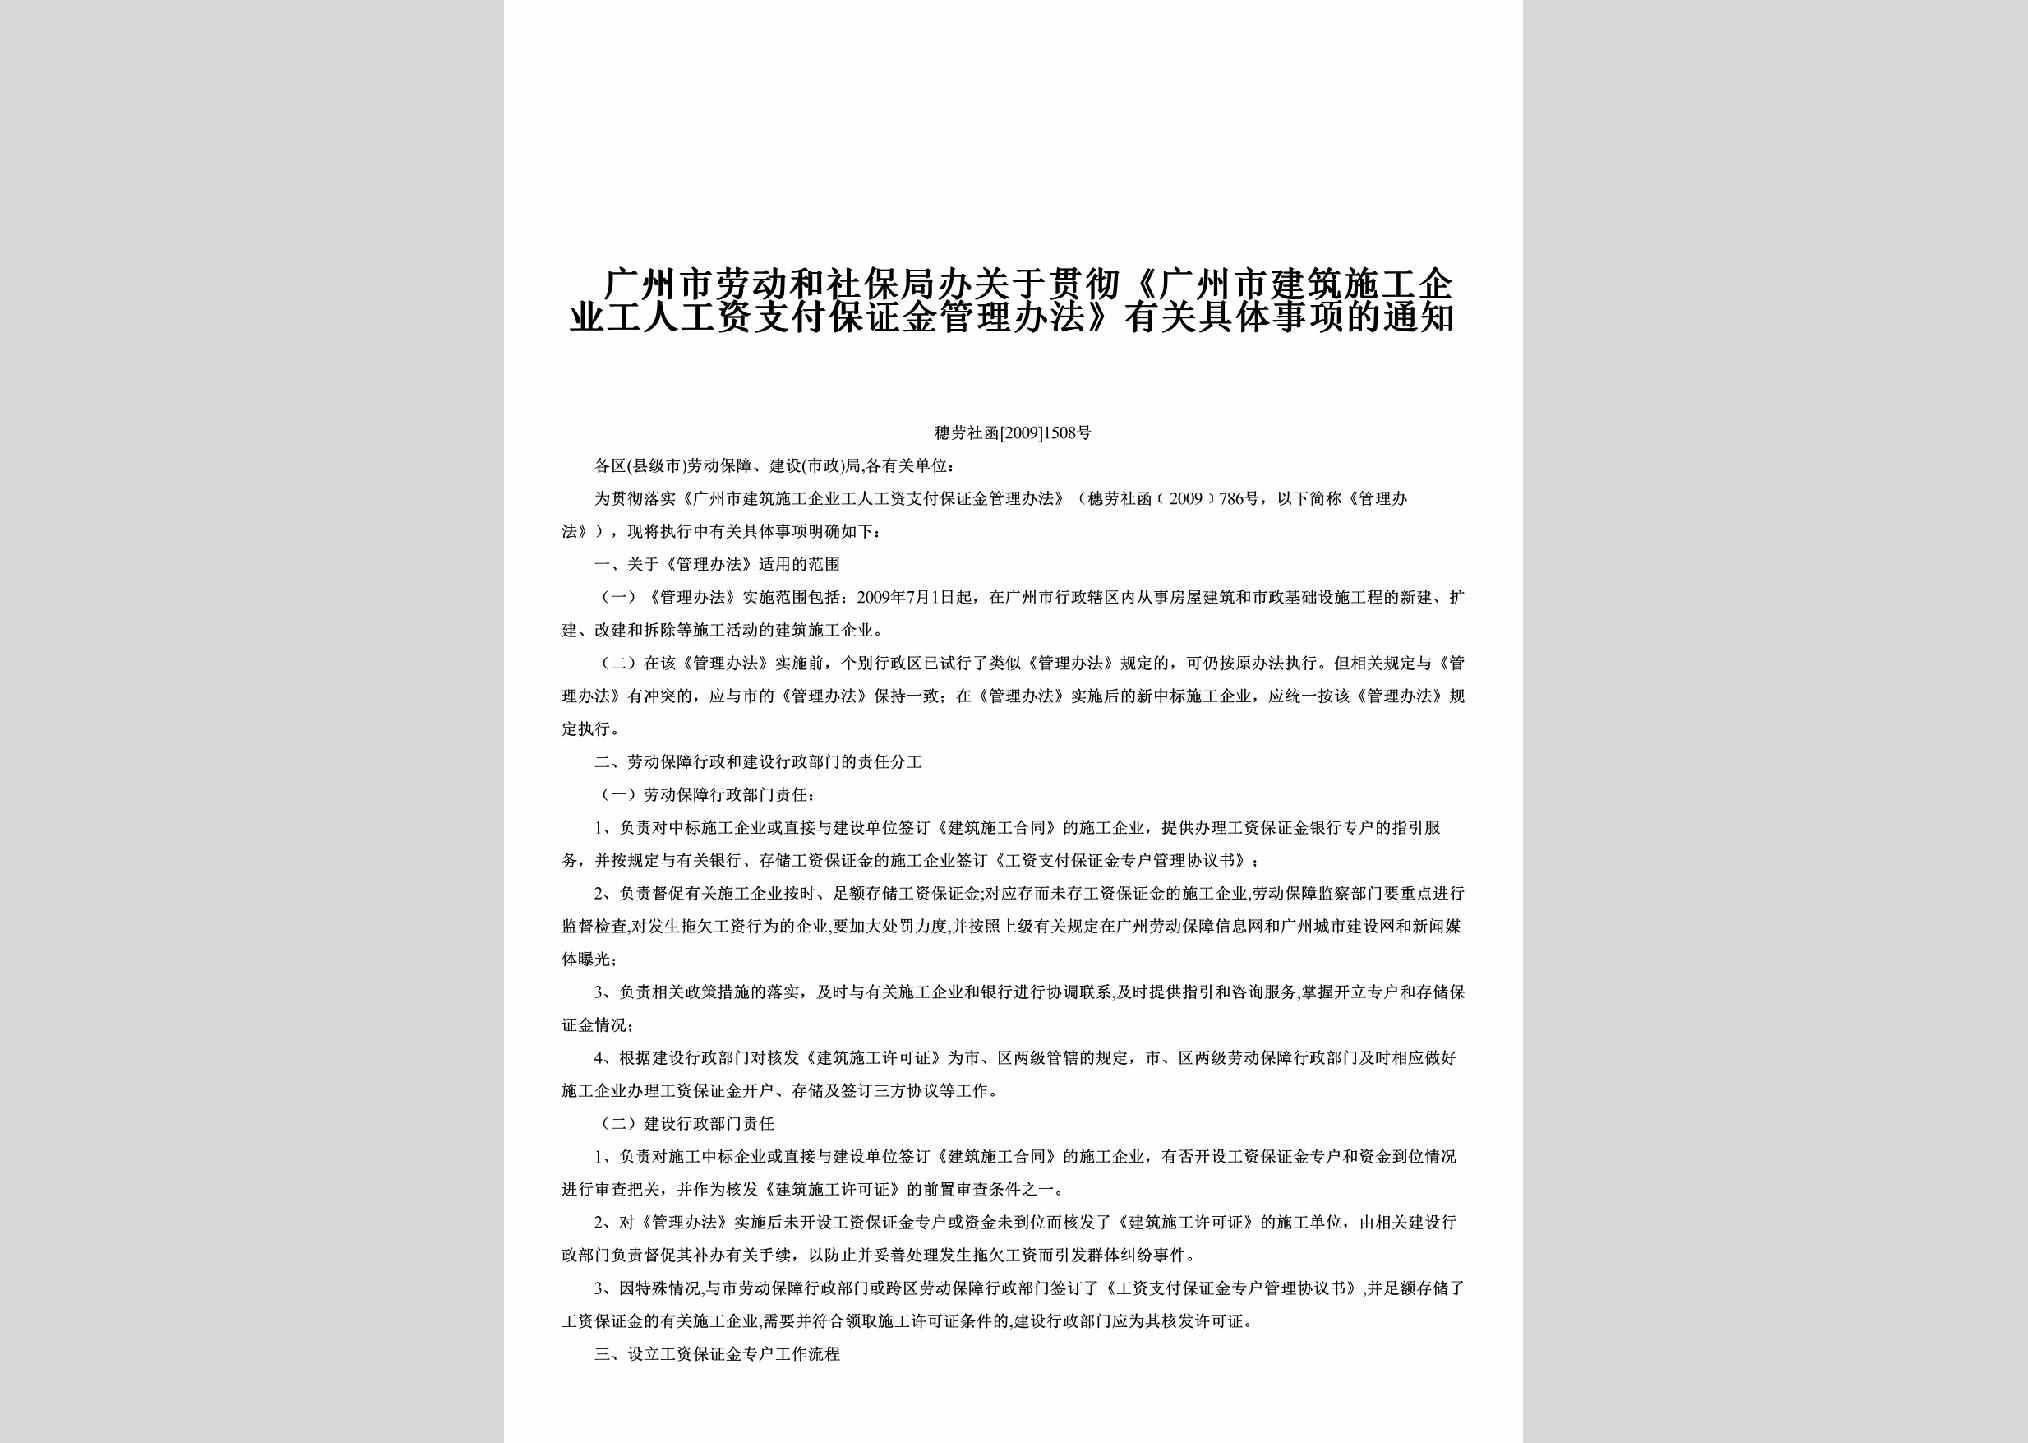 穗劳社函[2009]1508号：关于贯彻《广州市建筑施工企业工人工资支付保证金管理办法》有关具体事项的通知